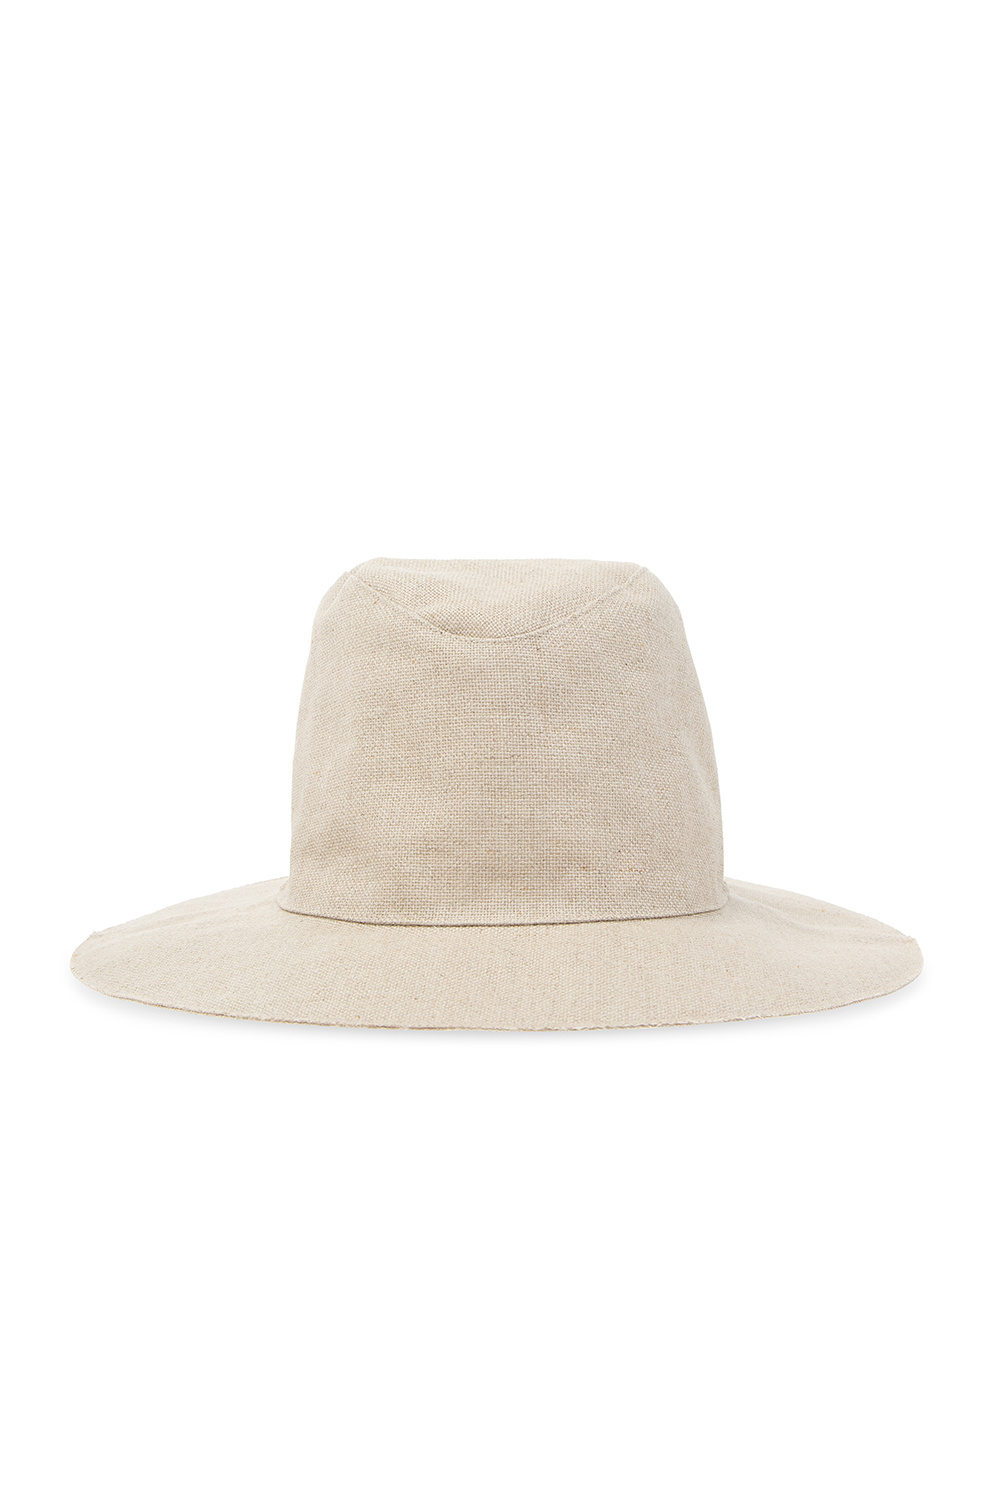 Undercover Linen hat